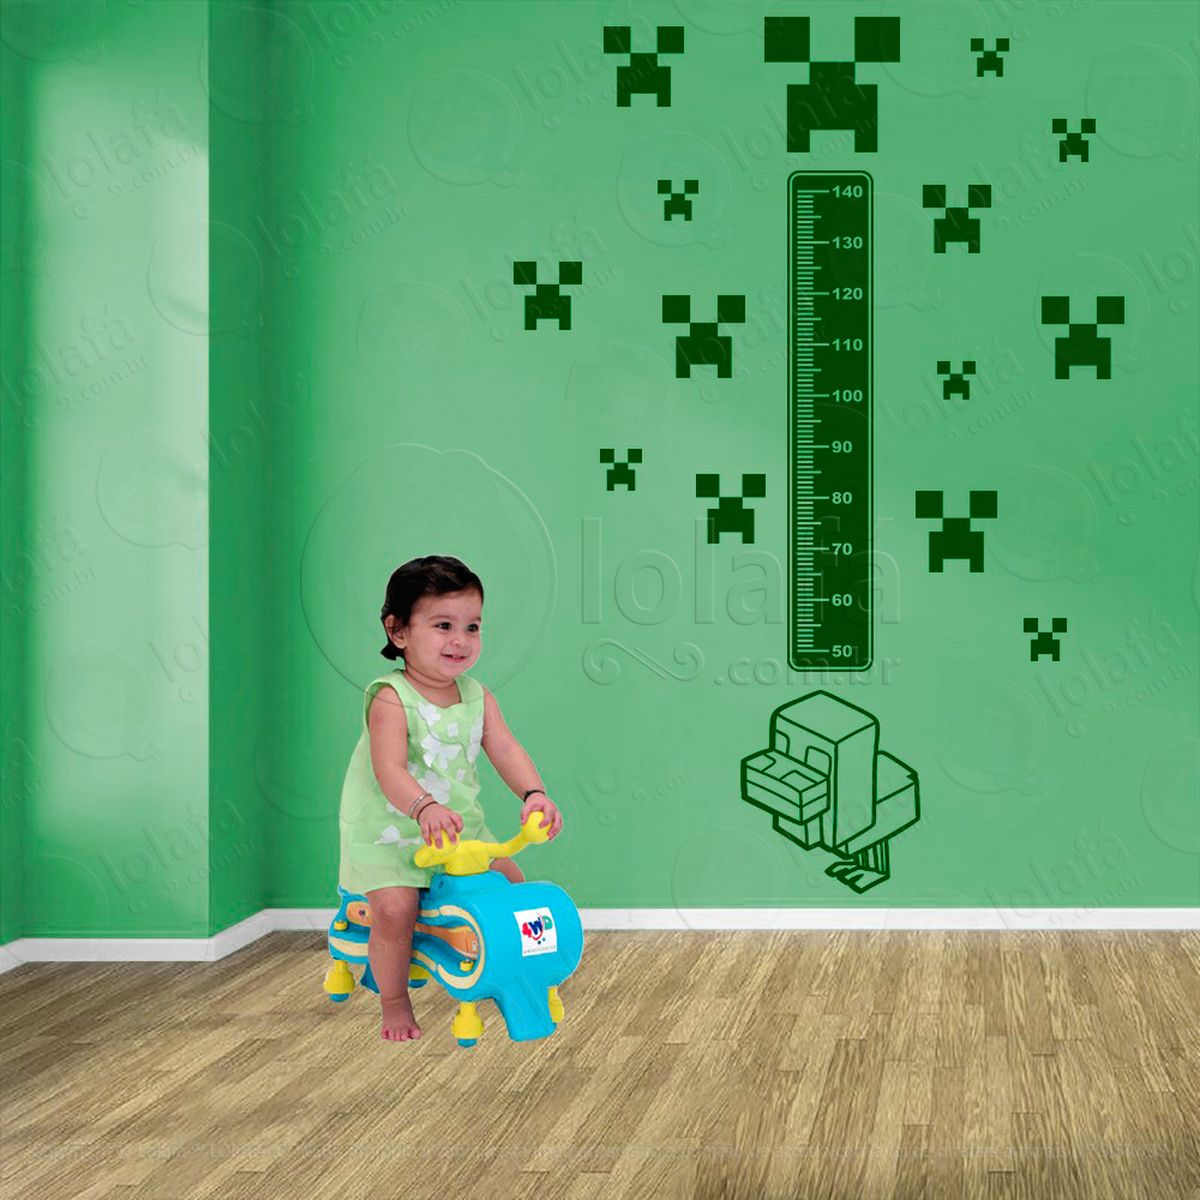 minecraft e minecraft adesivo régua de crescimento infantil, medidor de altura para quarto, porta e parede - mod:729